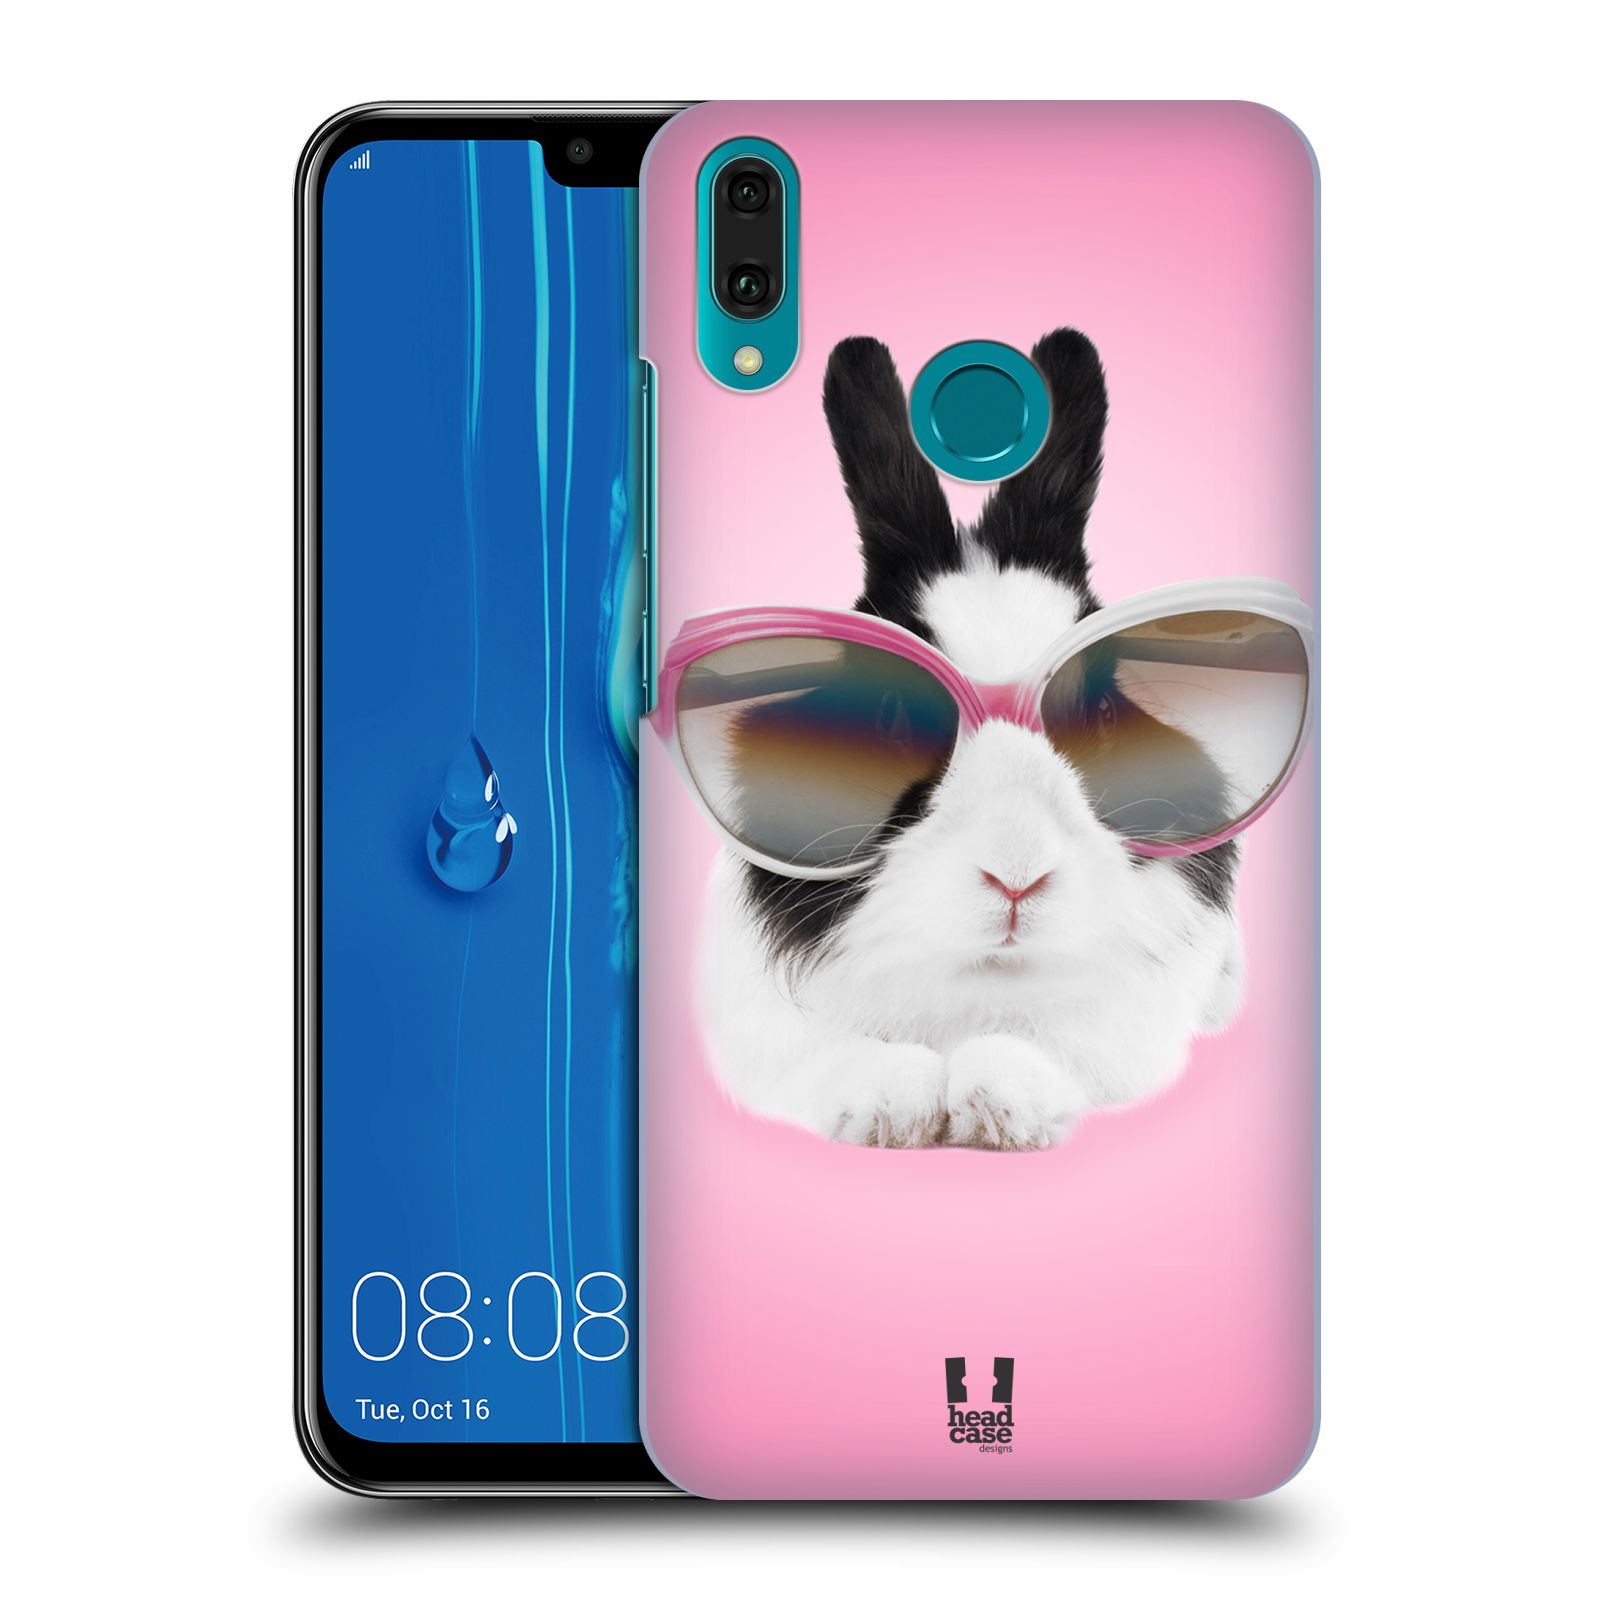 Pouzdro na mobil Huawei Y9 2019 - HEAD CASE - vzor Legrační zvířátka roztomilý králíček s brýlemi růžová